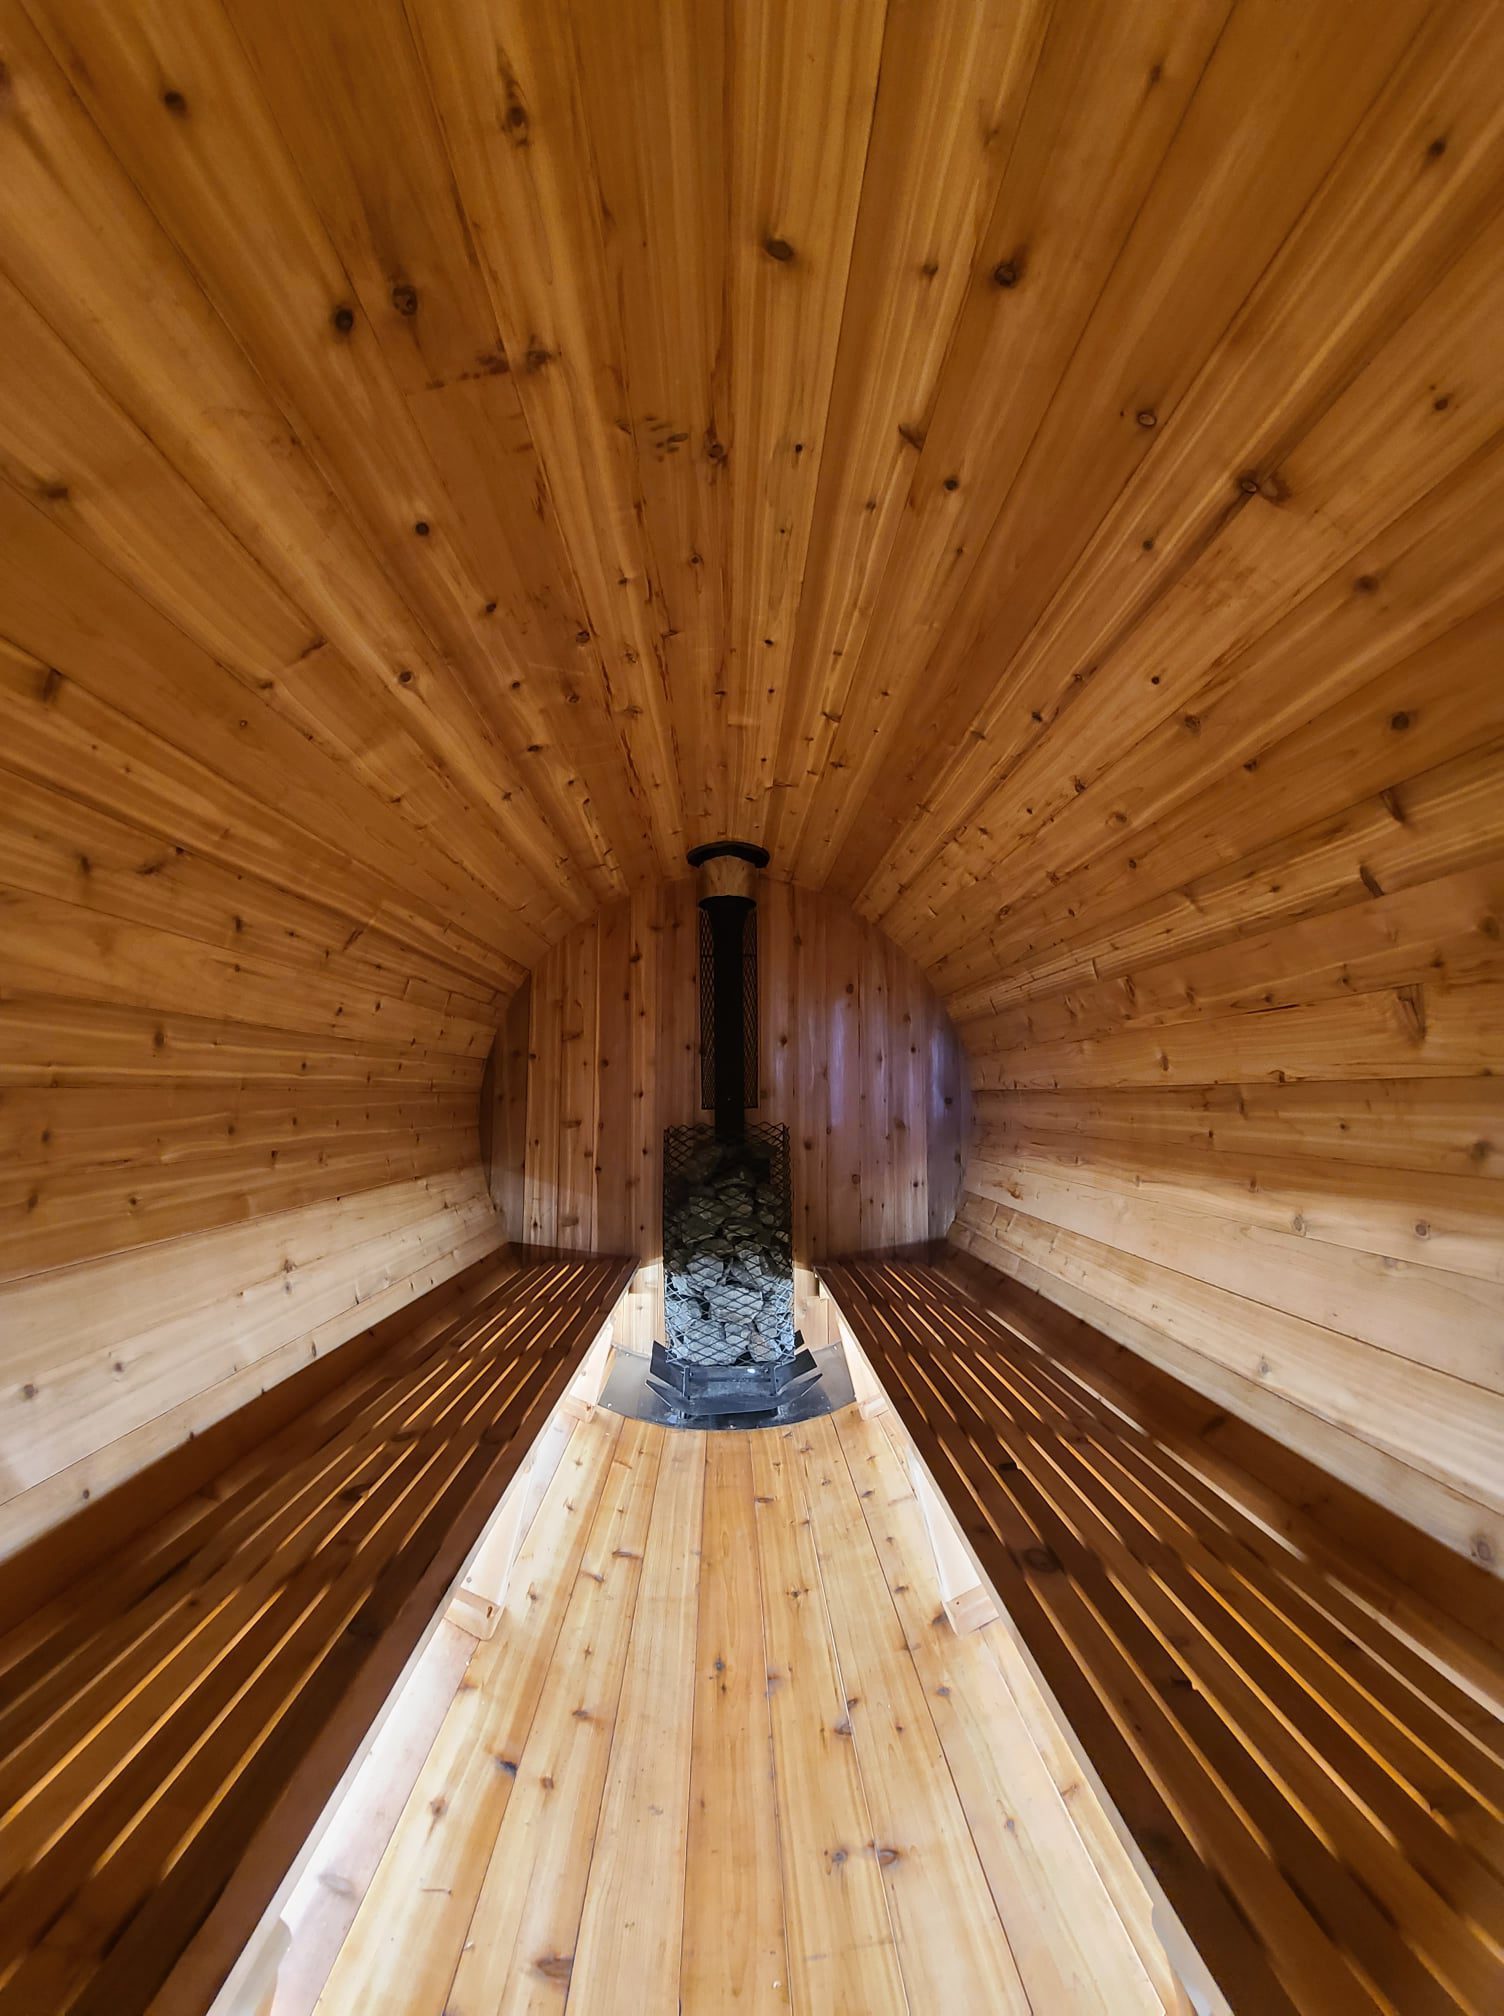 inside the nomad sauna barrel rental